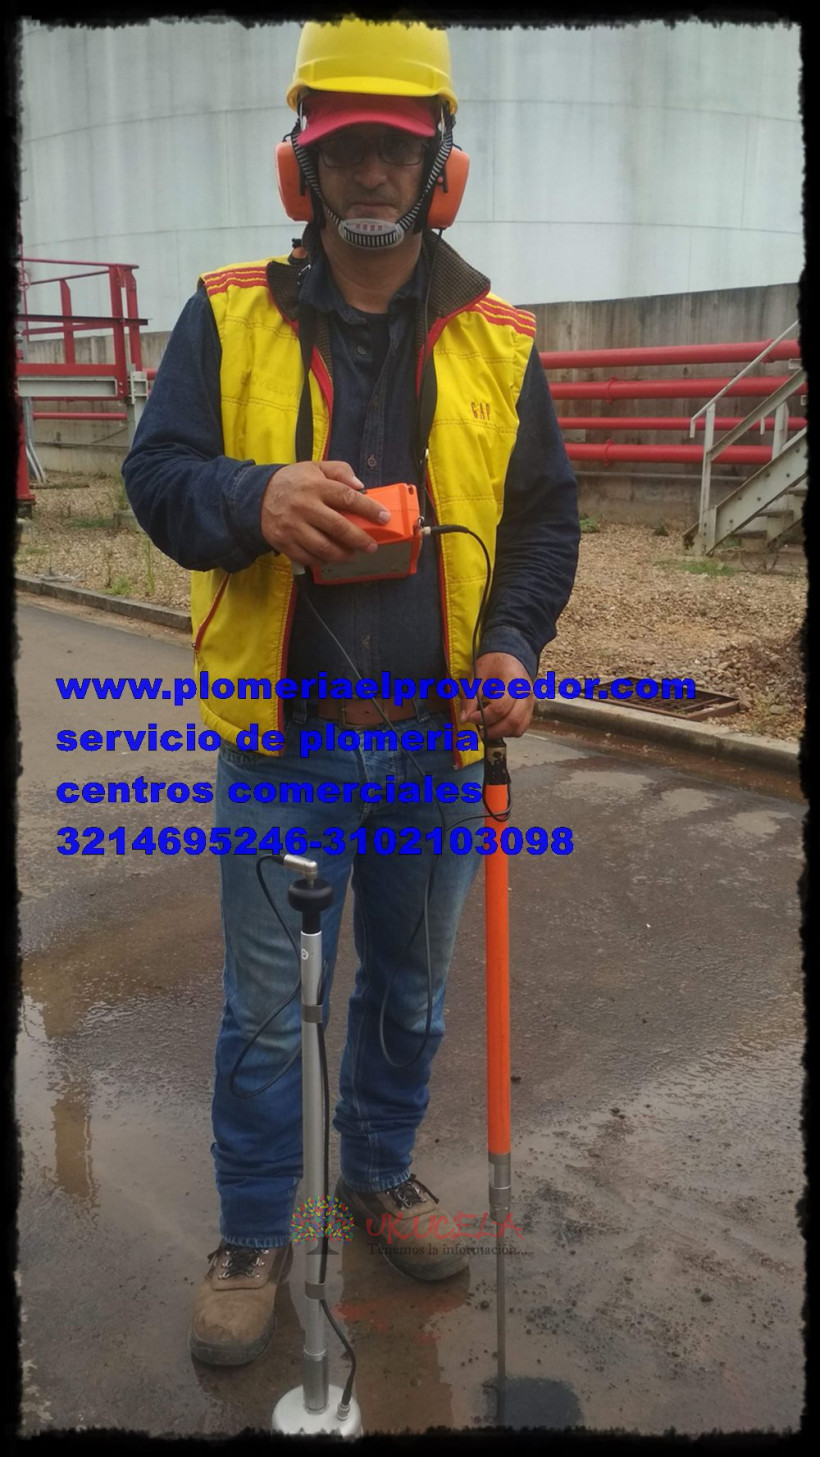 Detectores de fugas de agua - Servicio de plomeria en Medellin y Bogota.